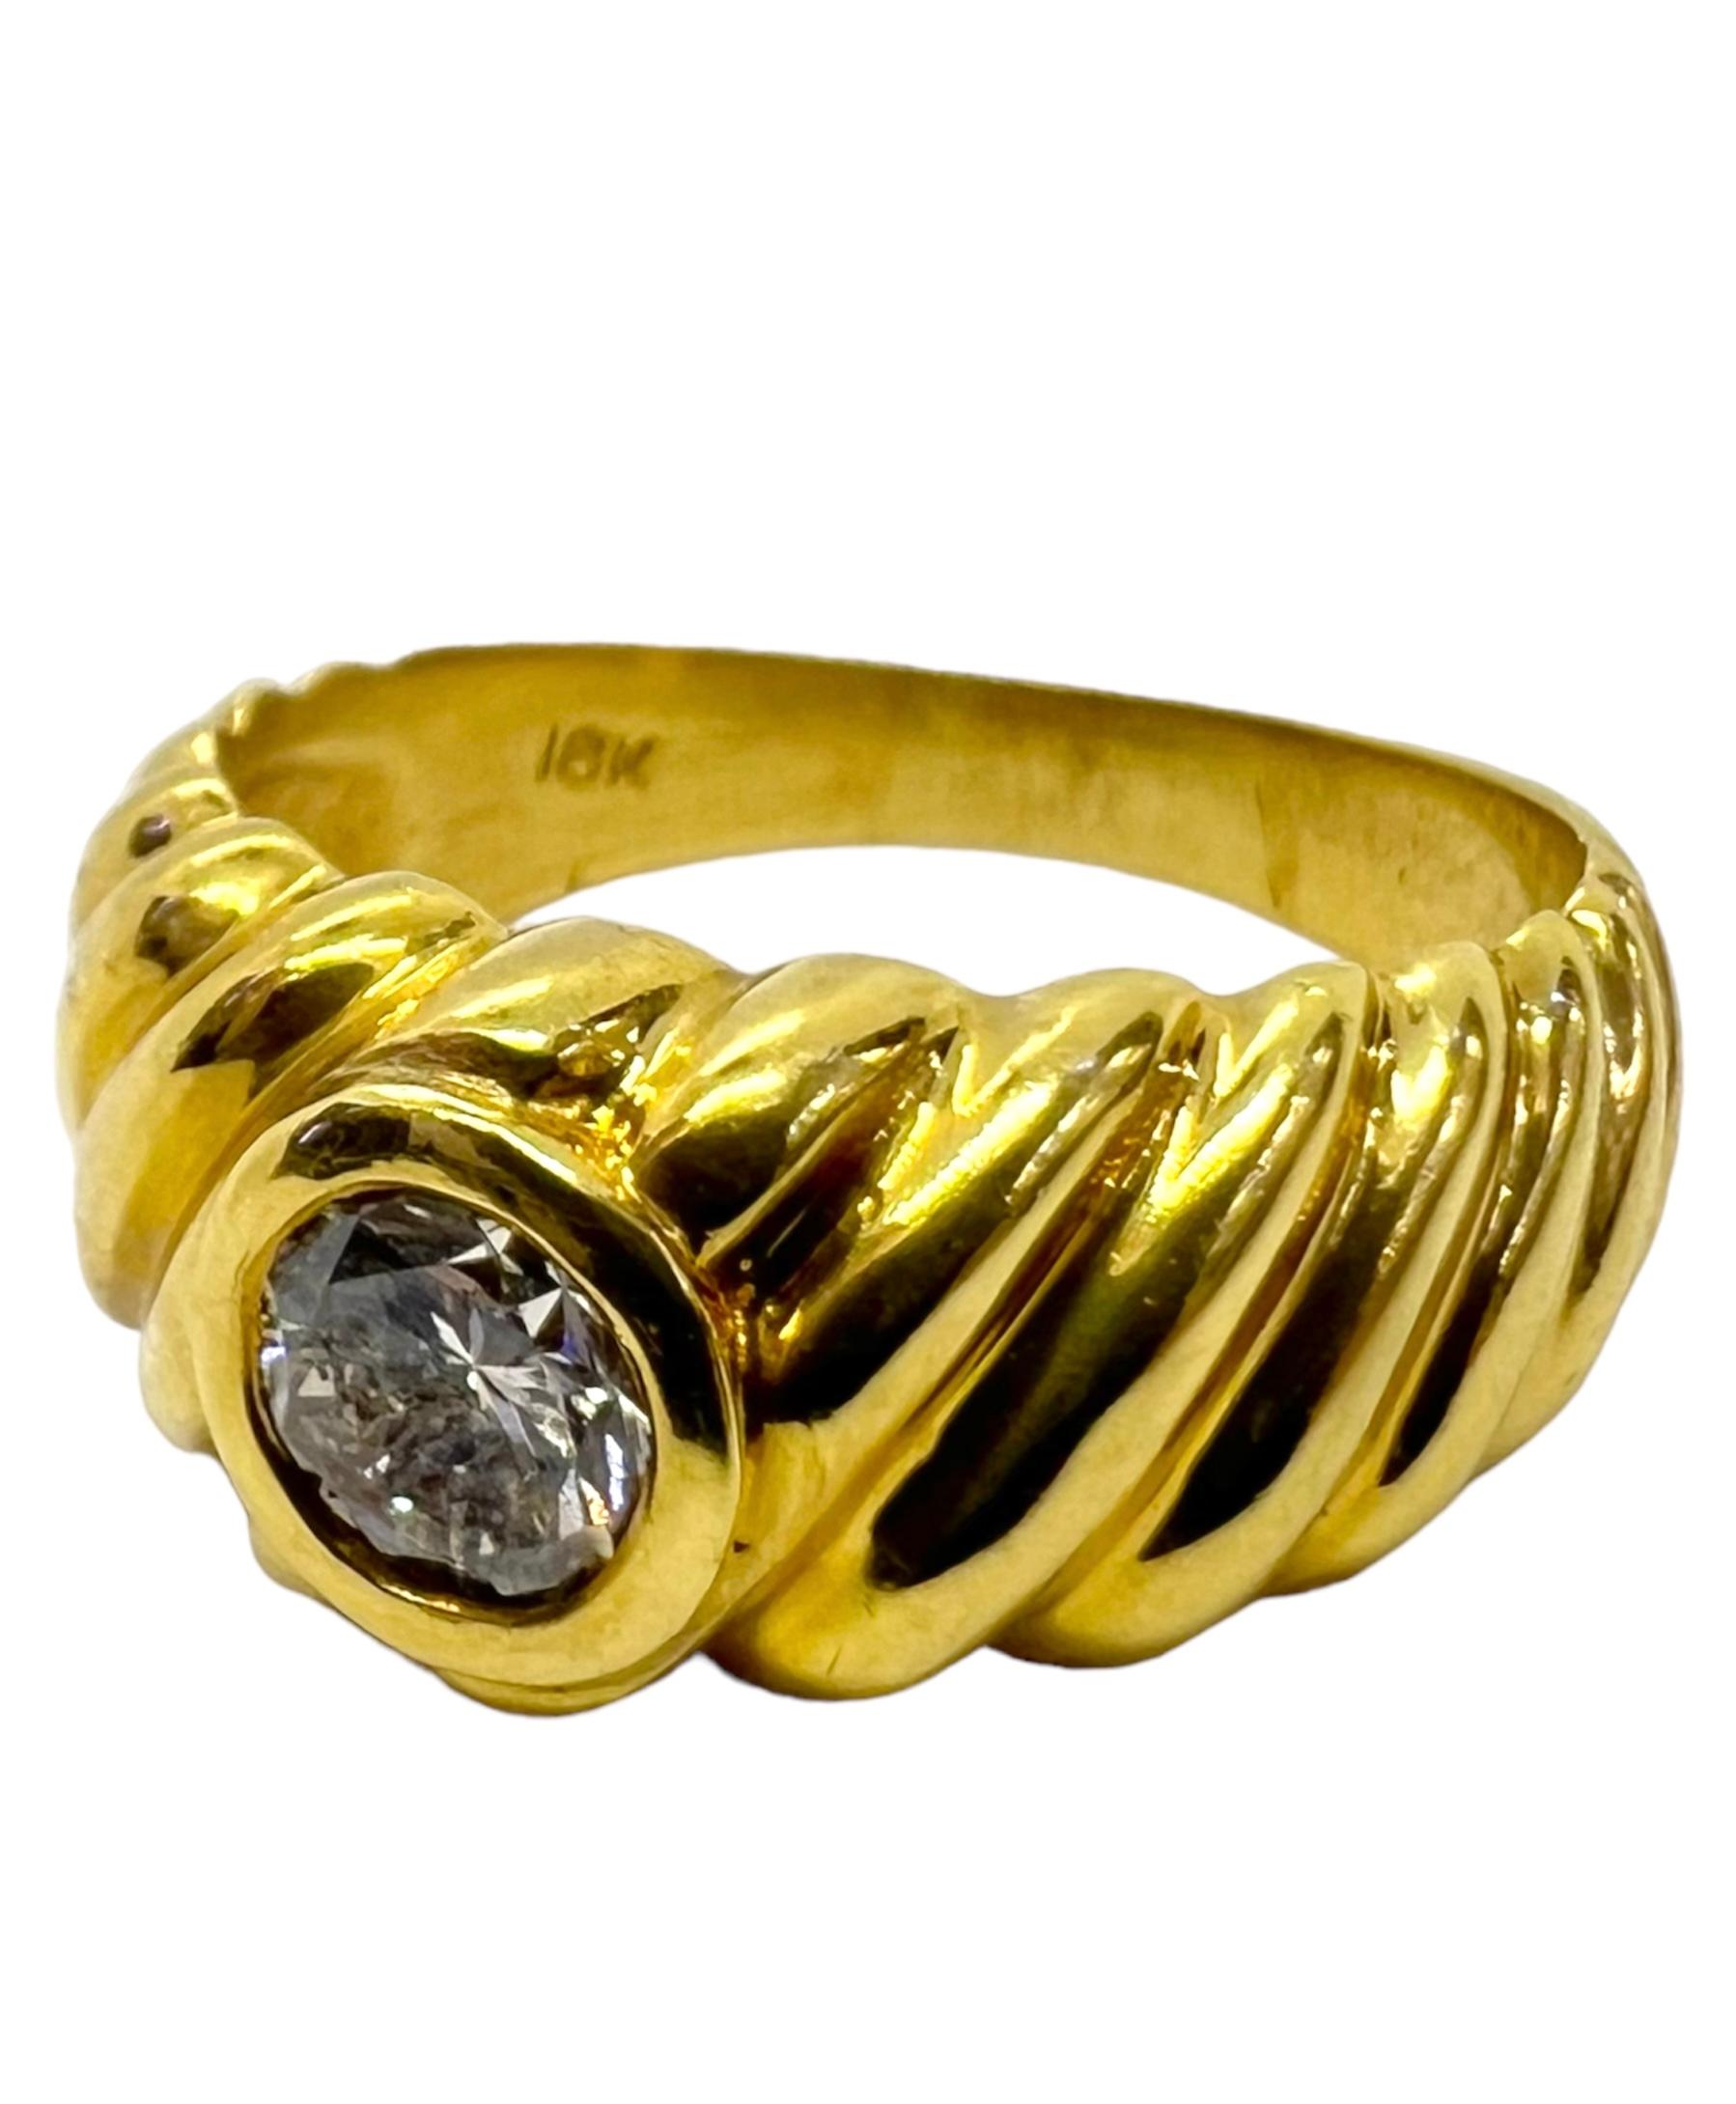 Bague en or jaune 18K avec un diamant rond de 0,46 carat.

Sophia D by Joseph Dardashti Ltd est connue dans le monde entier depuis 35 ans et s'inspire du design classique de l'Art déco qui fusionne avec les techniques de fabrication modernes.  